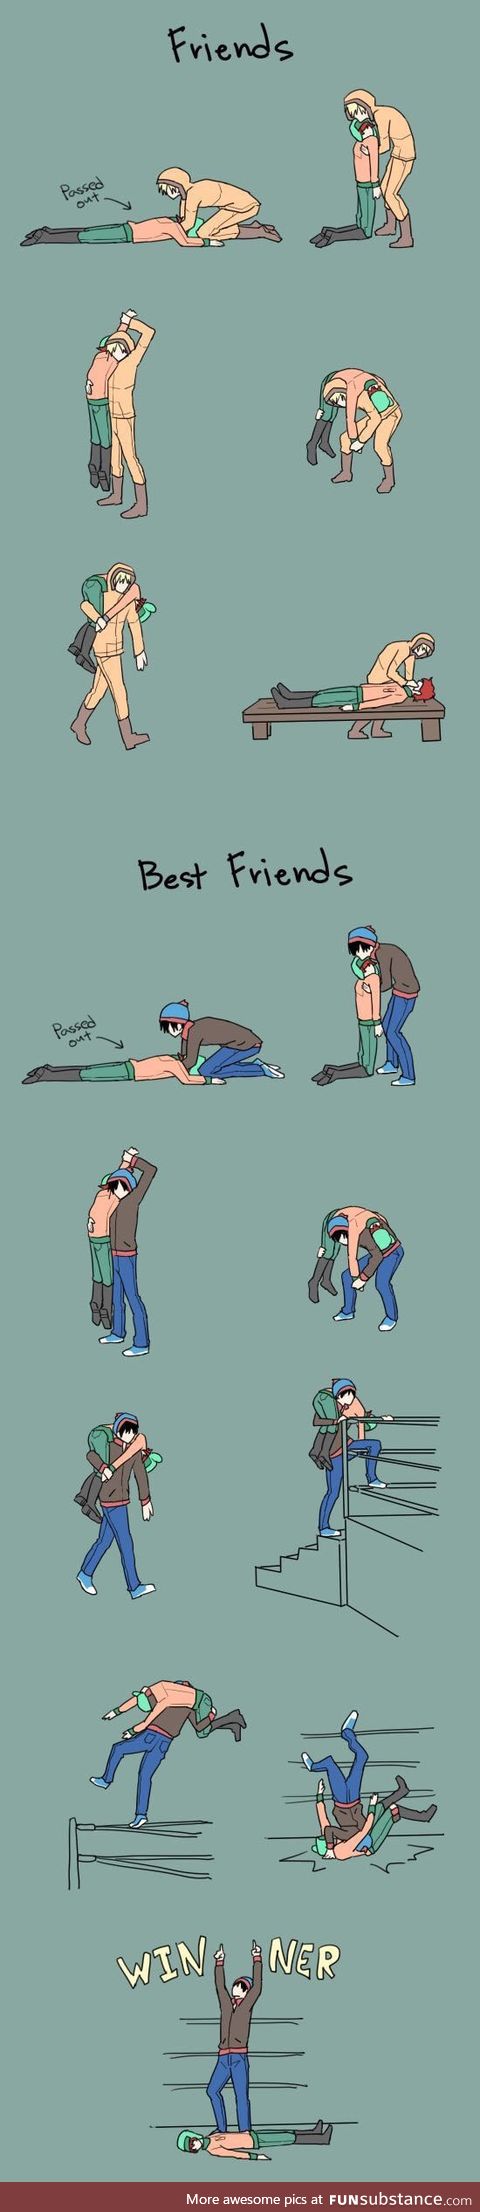 Friends vs. Best friends